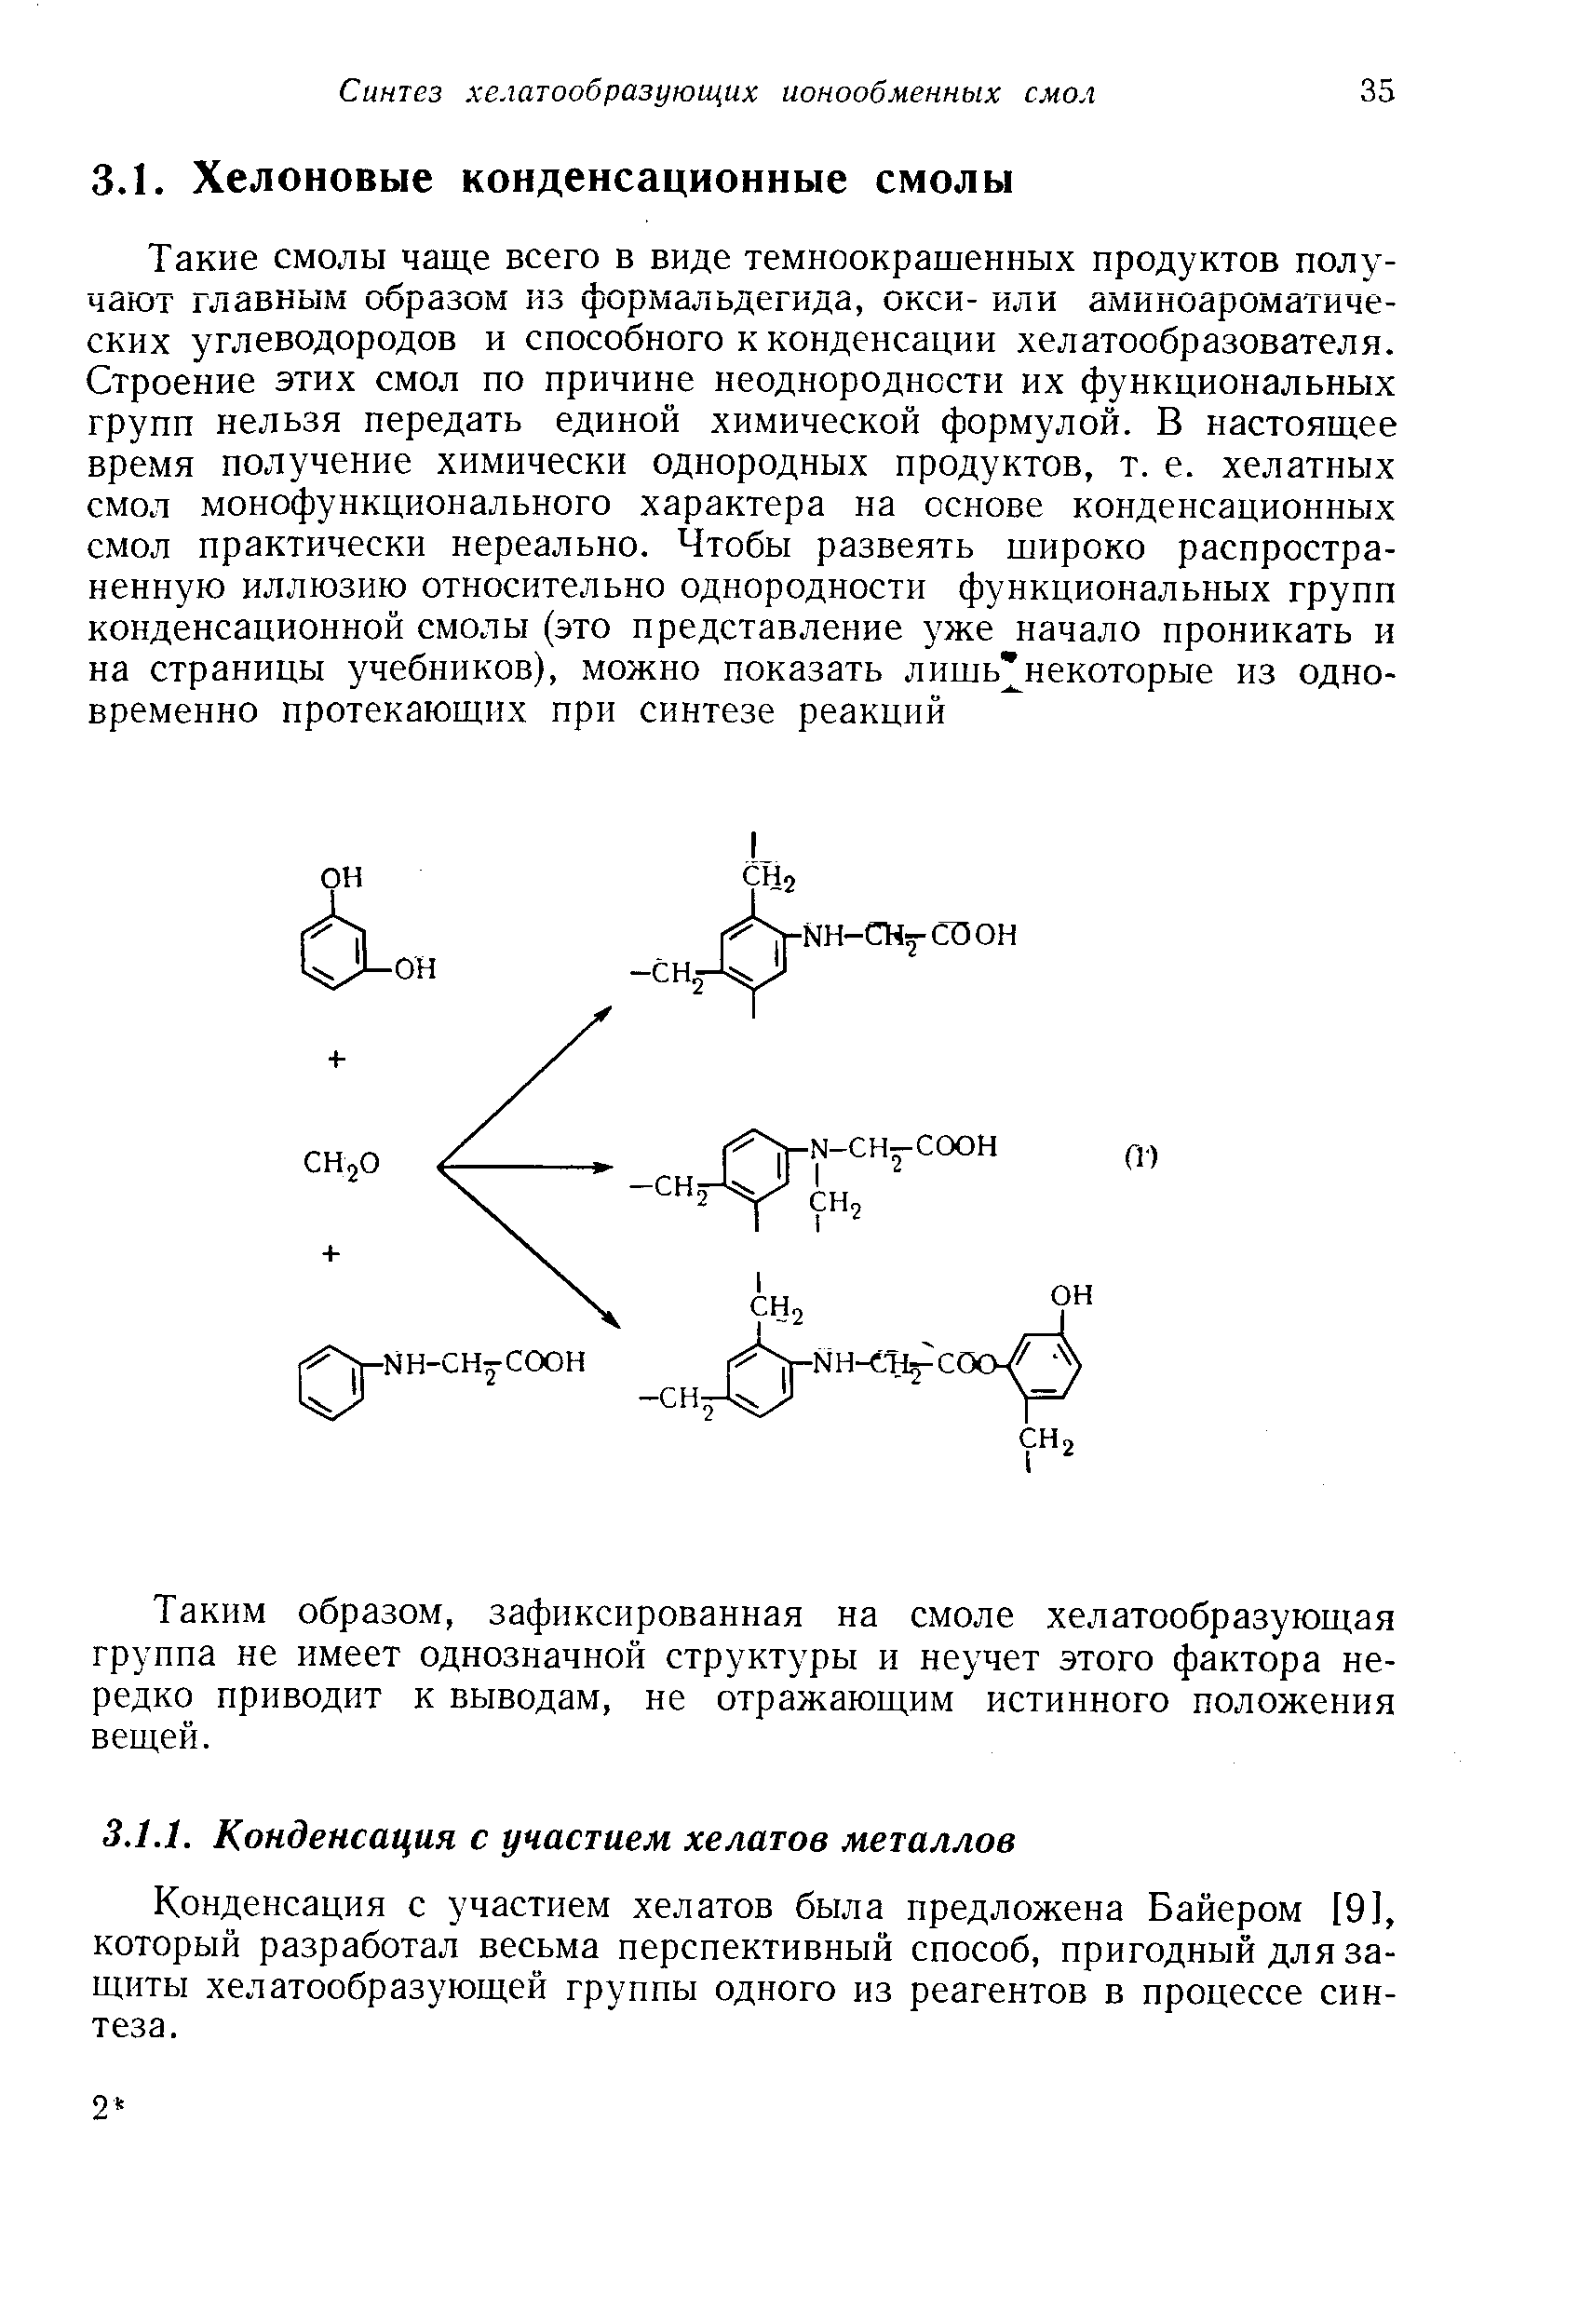 Конденсация с участием хелатов была предложена Байером [9], который разработал весьма перспективный способ, пригодный для защиты хелатообразующей группы одного из реагентов в процессе синтеза.